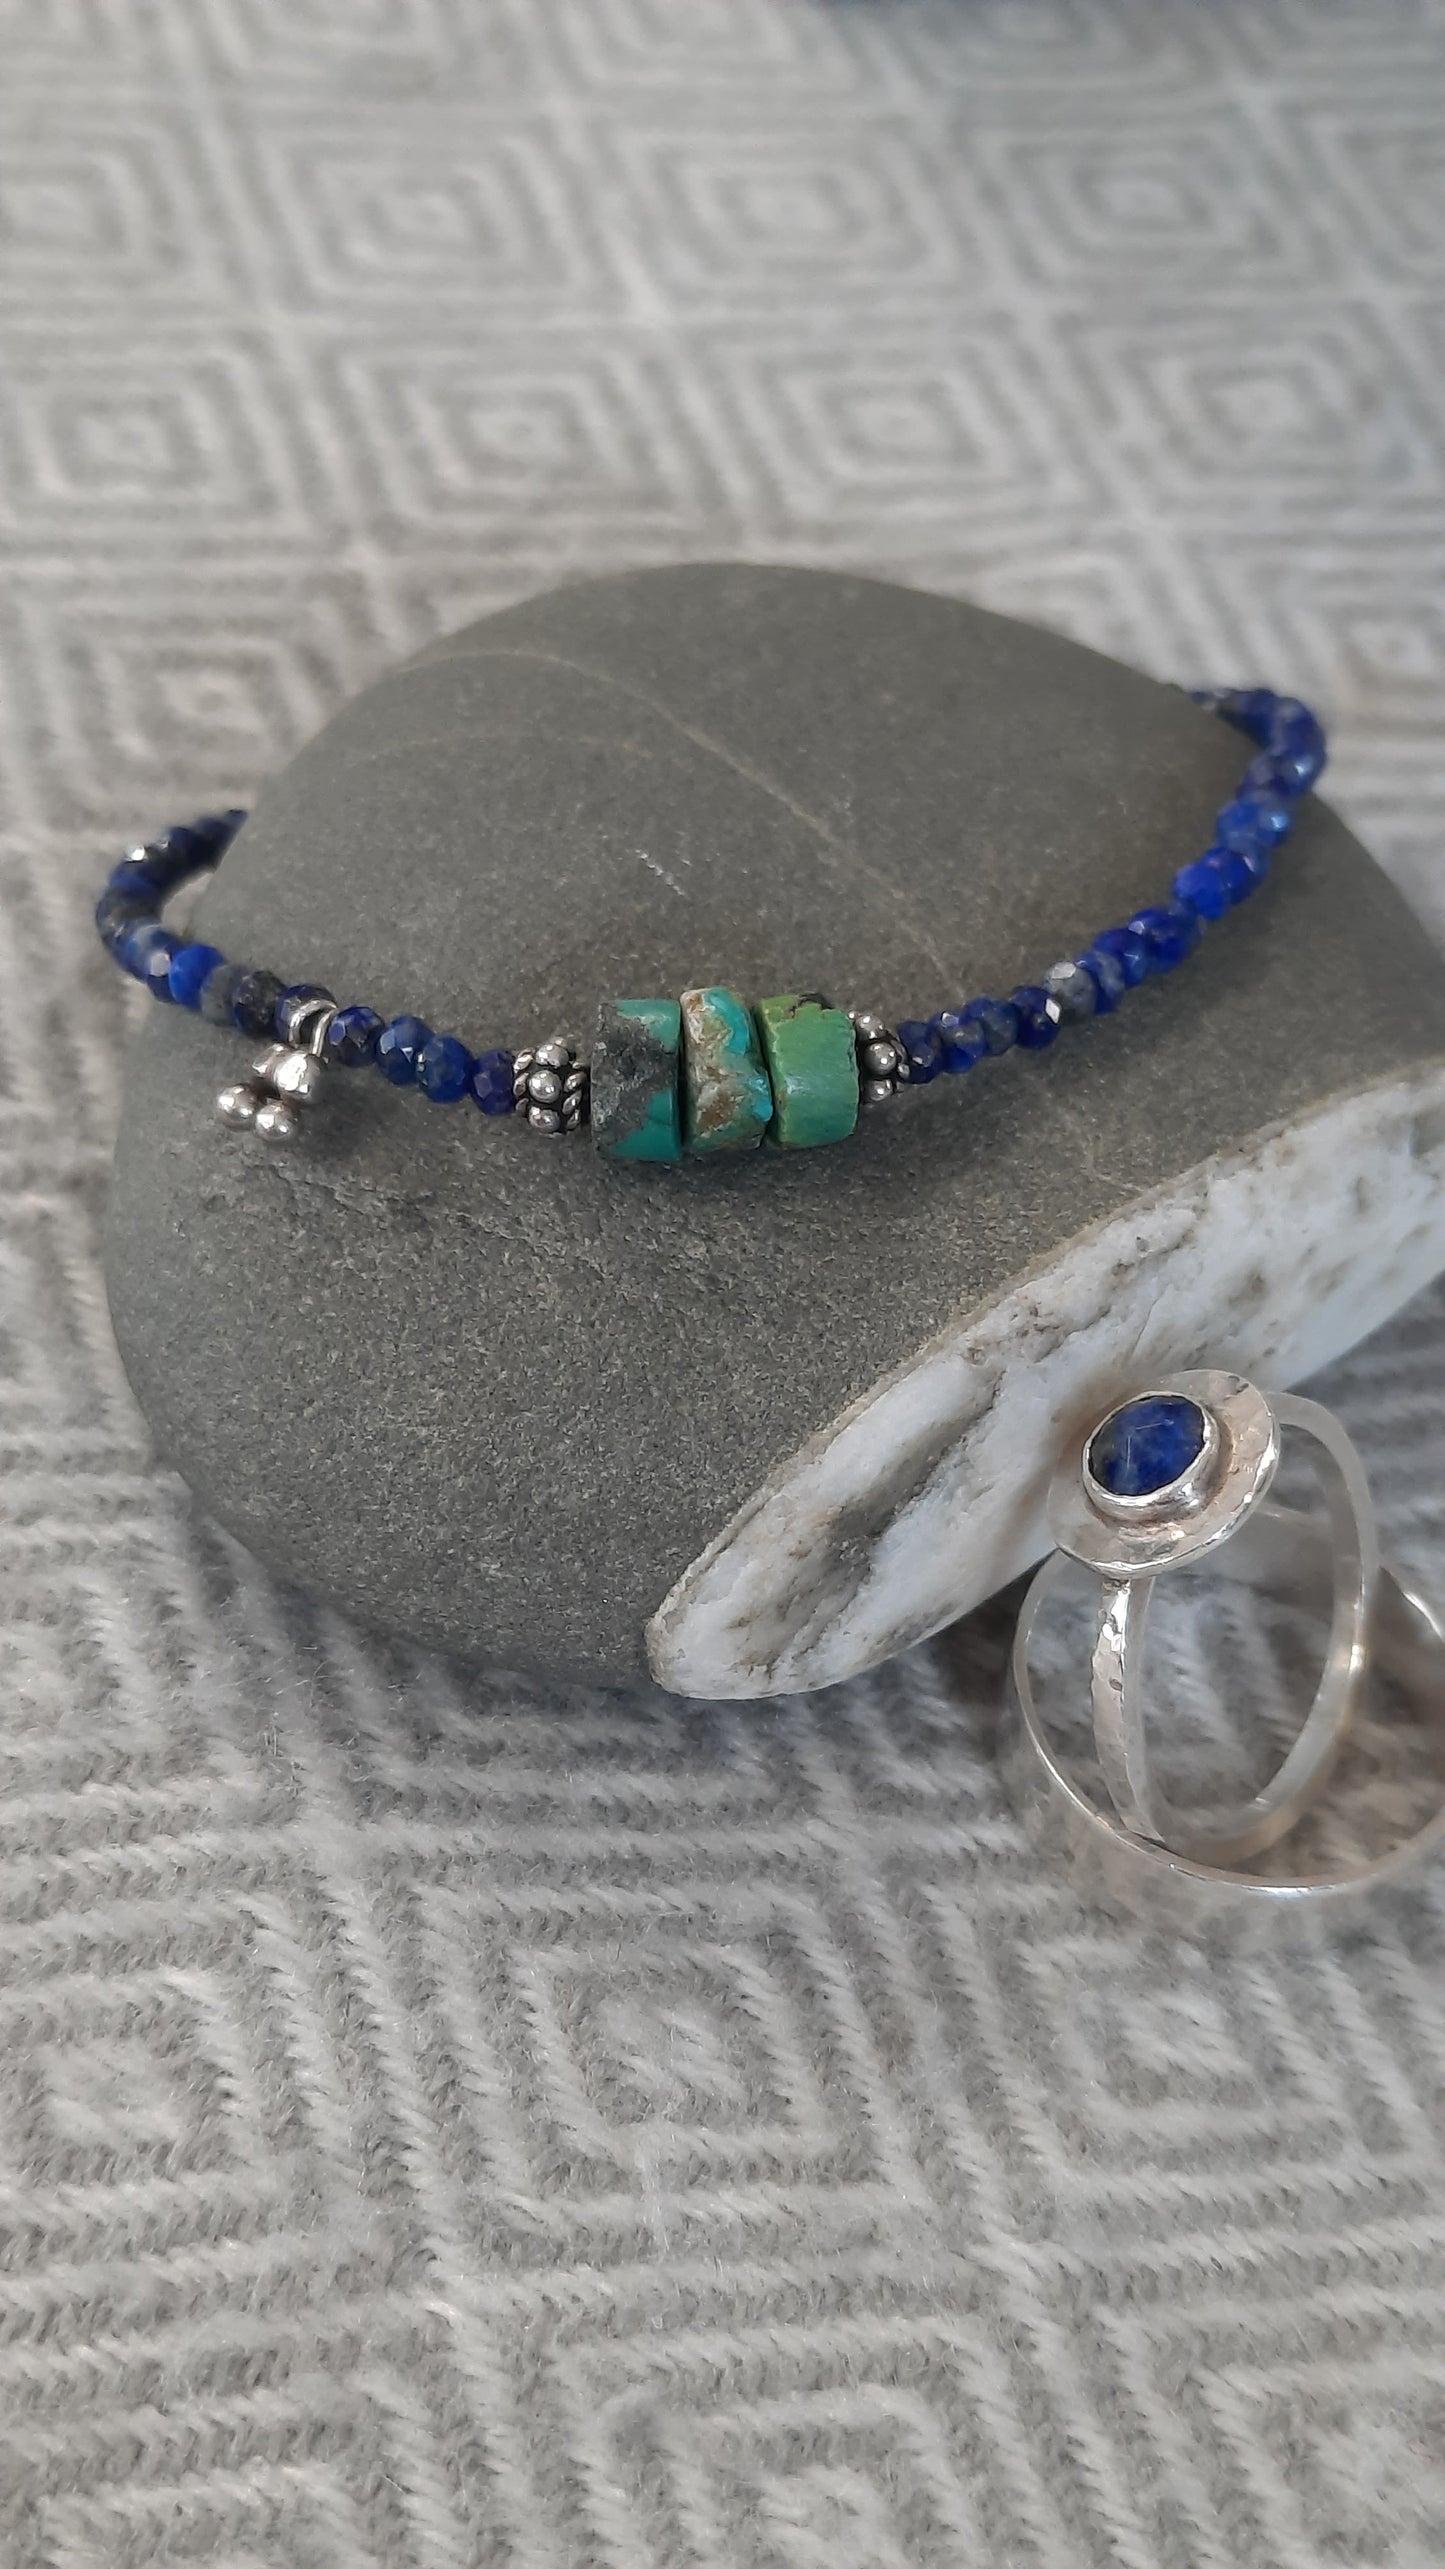 Lapiz Lazuli and Turquoise Beaded Bracelet